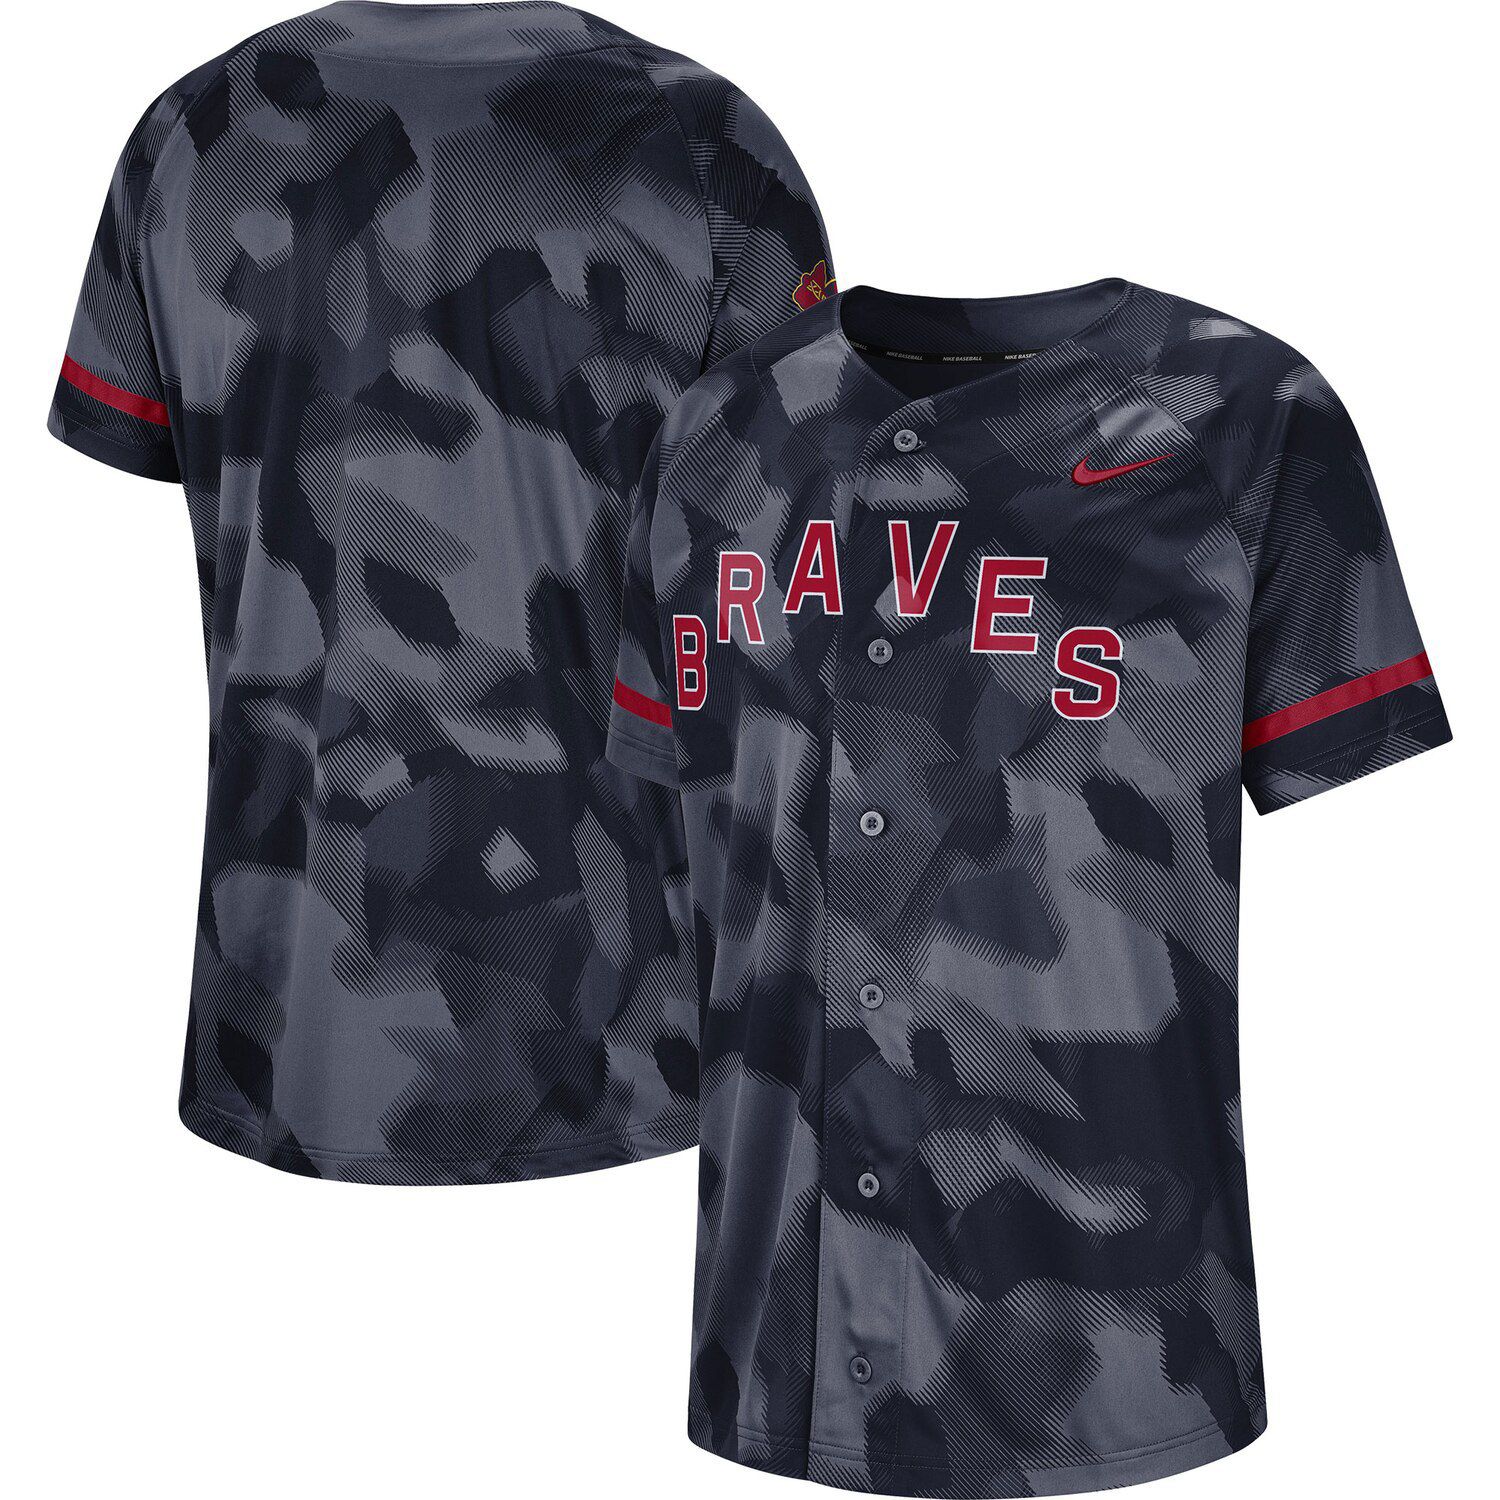 Men's Nike Navy Atlanta Braves Camo Jersey